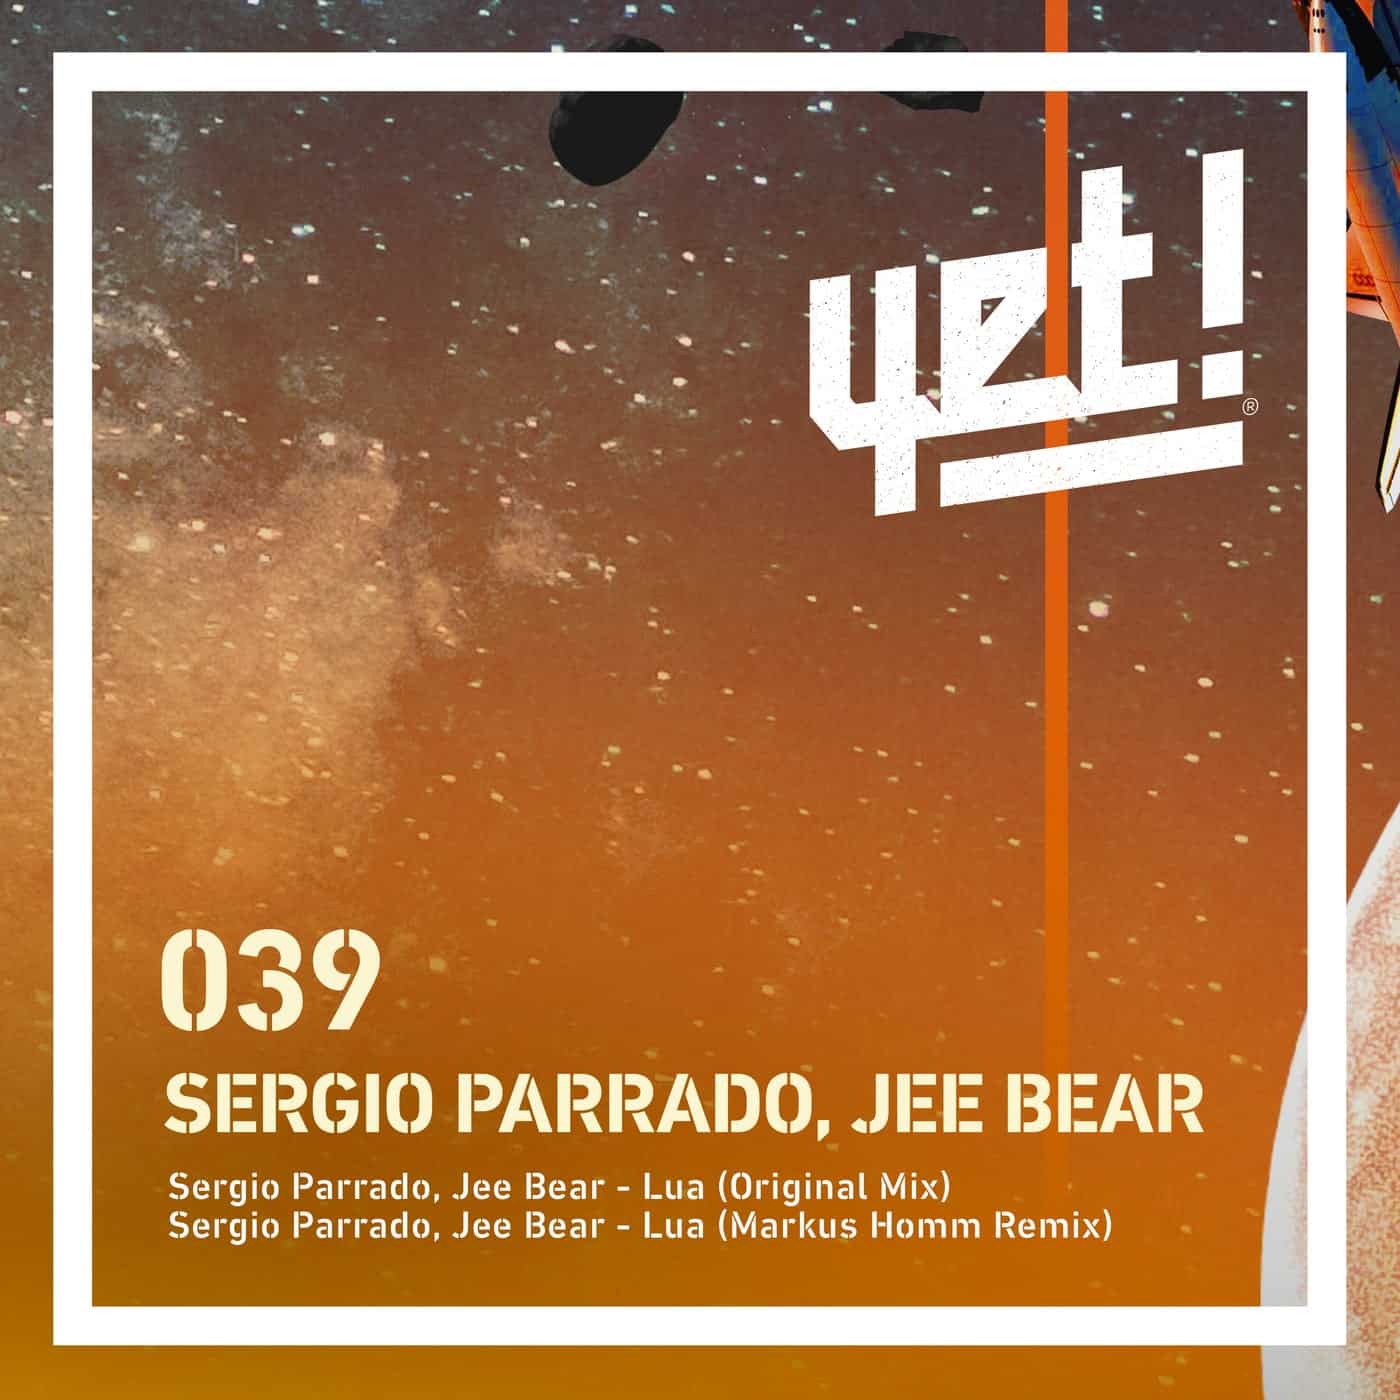 Download Sergio Parrado, Jee Bear - Lua on Electrobuzz